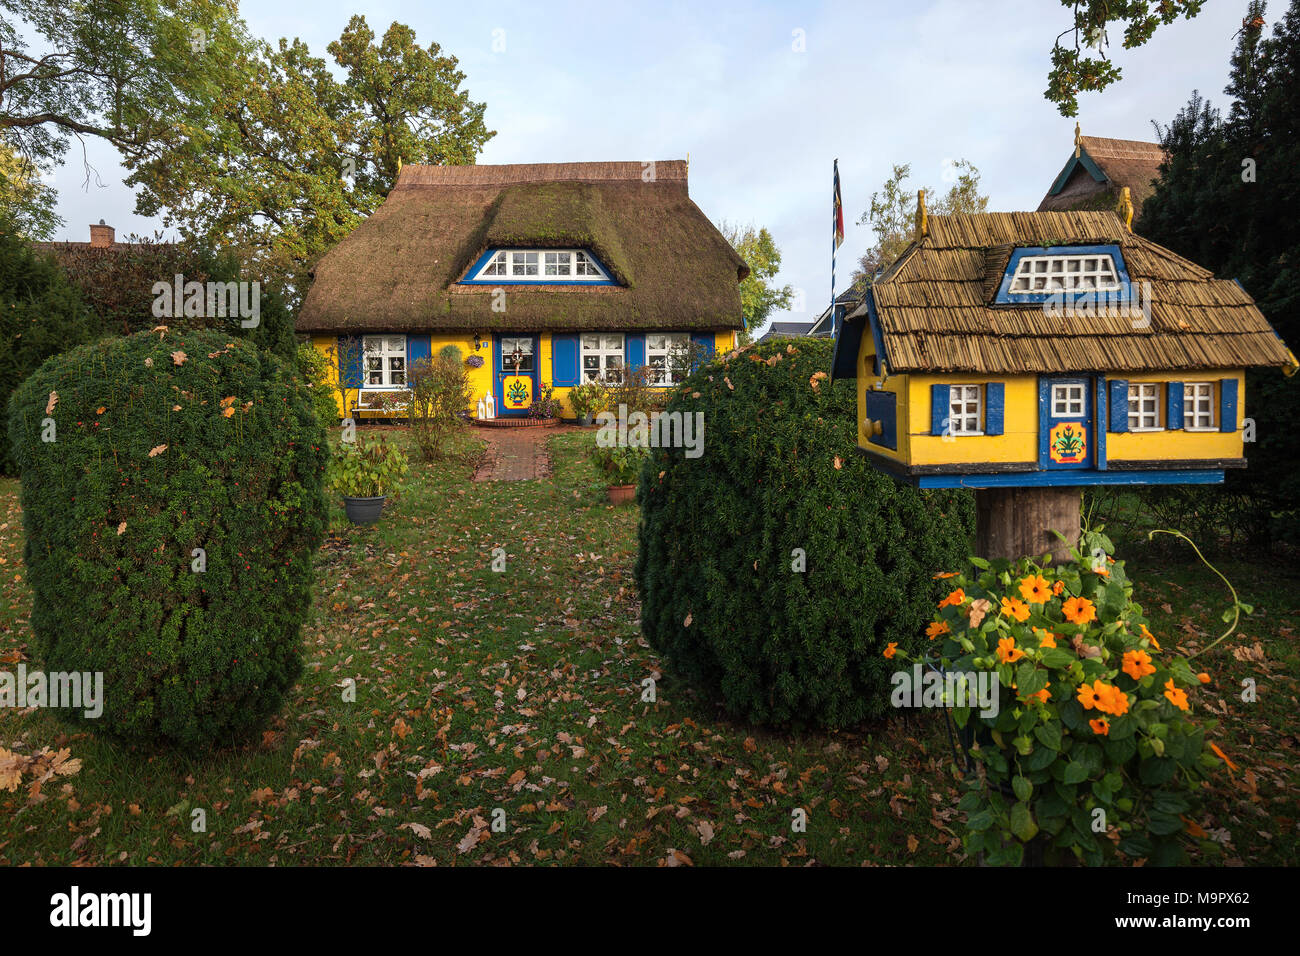 Tipici giallo con tetto di paglia house con bird house, nato am Darß, Fischland-Darß-Zingst, Meclemburgo-Pomerania Occidentale Foto Stock